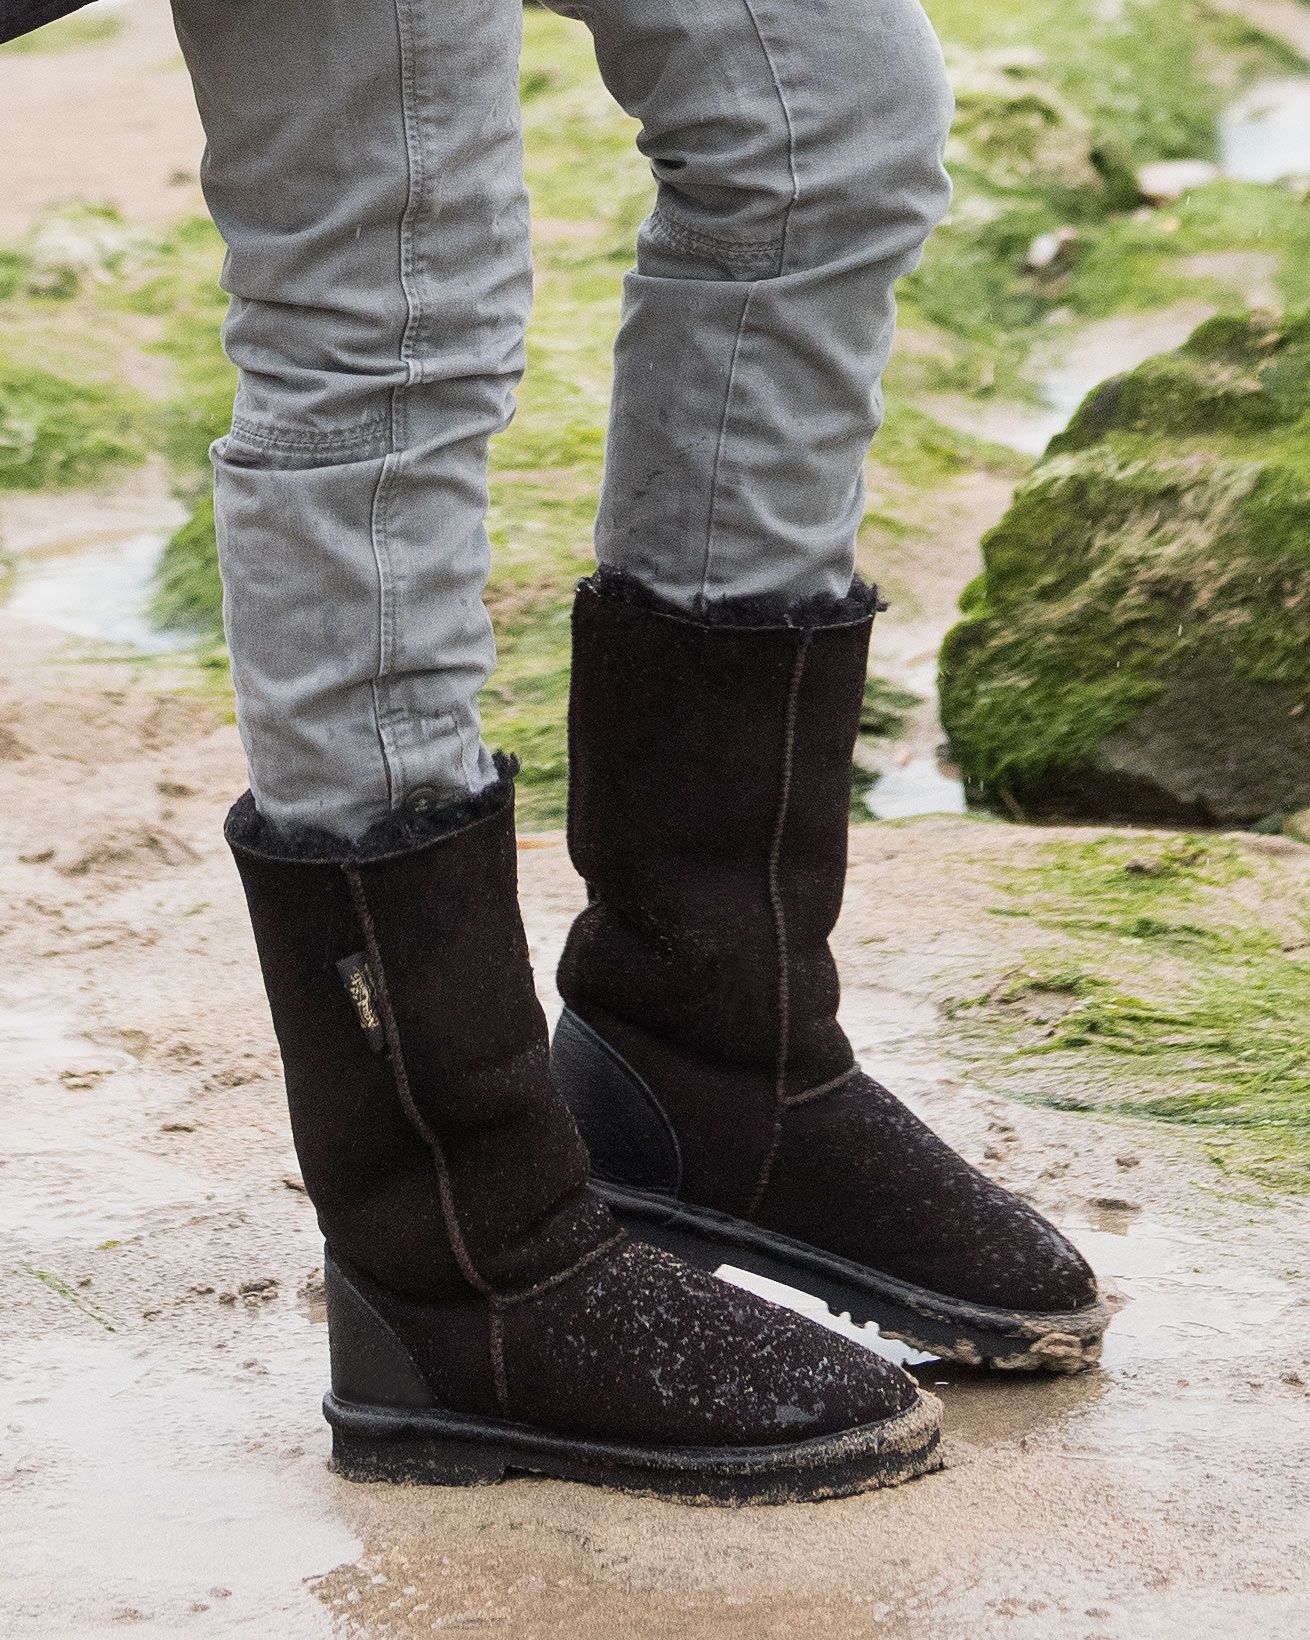 Aqualamb Shearling Boots Calf